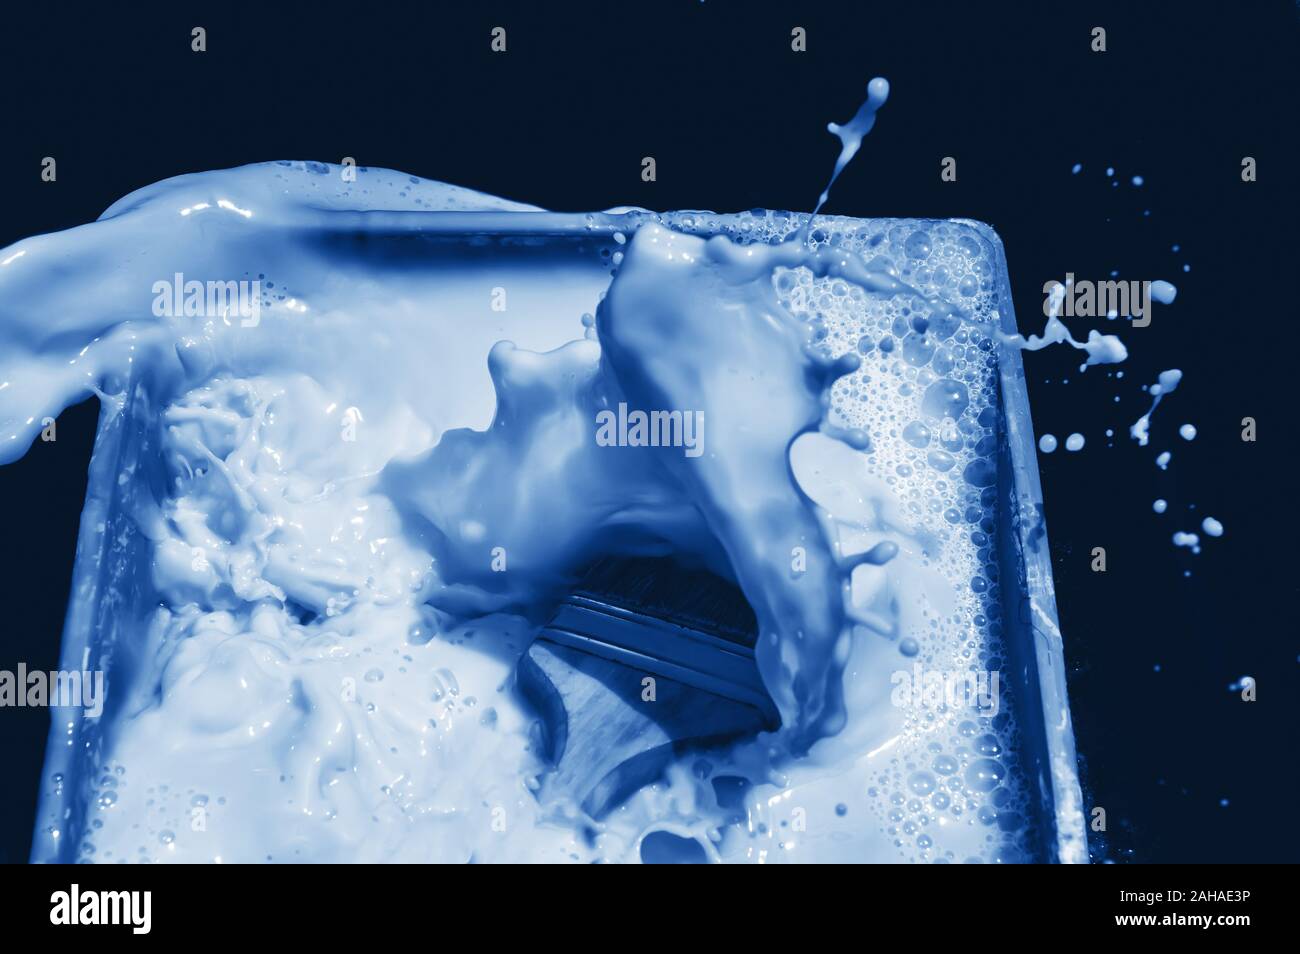 Splash bleu brosse après tomber dans la peinture liquide sur fond noir. Dans le quartier branché de tons scène classique bleu - couleur de l'année 2020 concept. Bac dynamique Banque D'Images